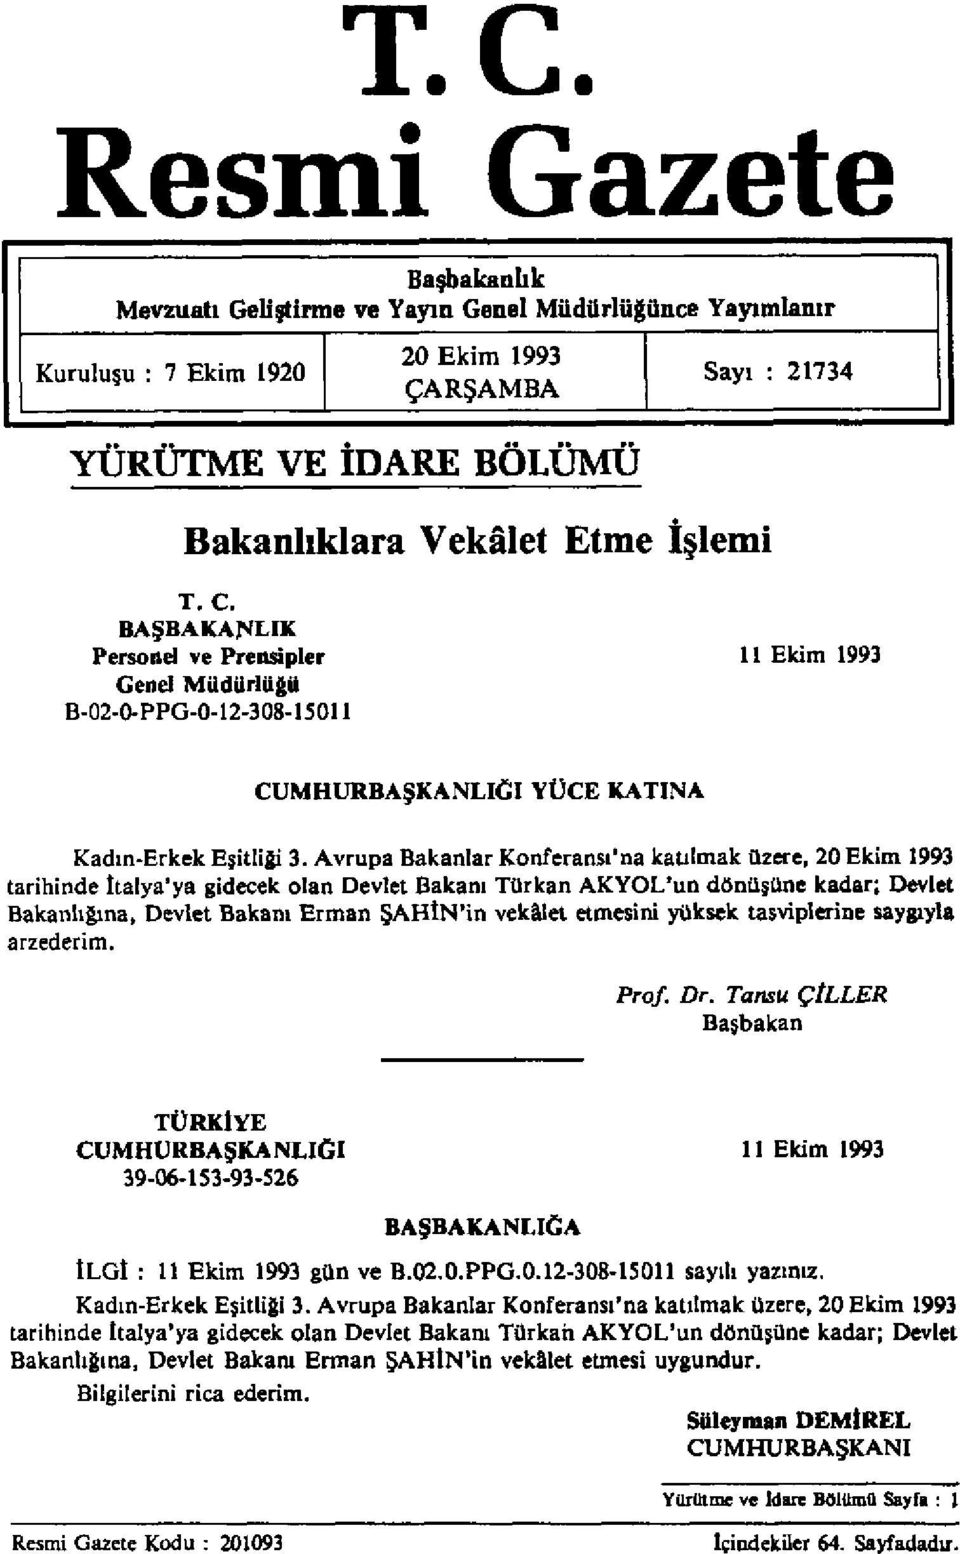 Avrupa Bakanlar Konferansı'na katılmak üzere, 20 Ekim 1993 tarihinde İtalya'ya gidecek olan Devlet Bakanı Türkan AKYOL'un dönüşüne kadar; Devlet Bakanlığına, Devlet Bakam Erman ŞAHİN'in vekâlet